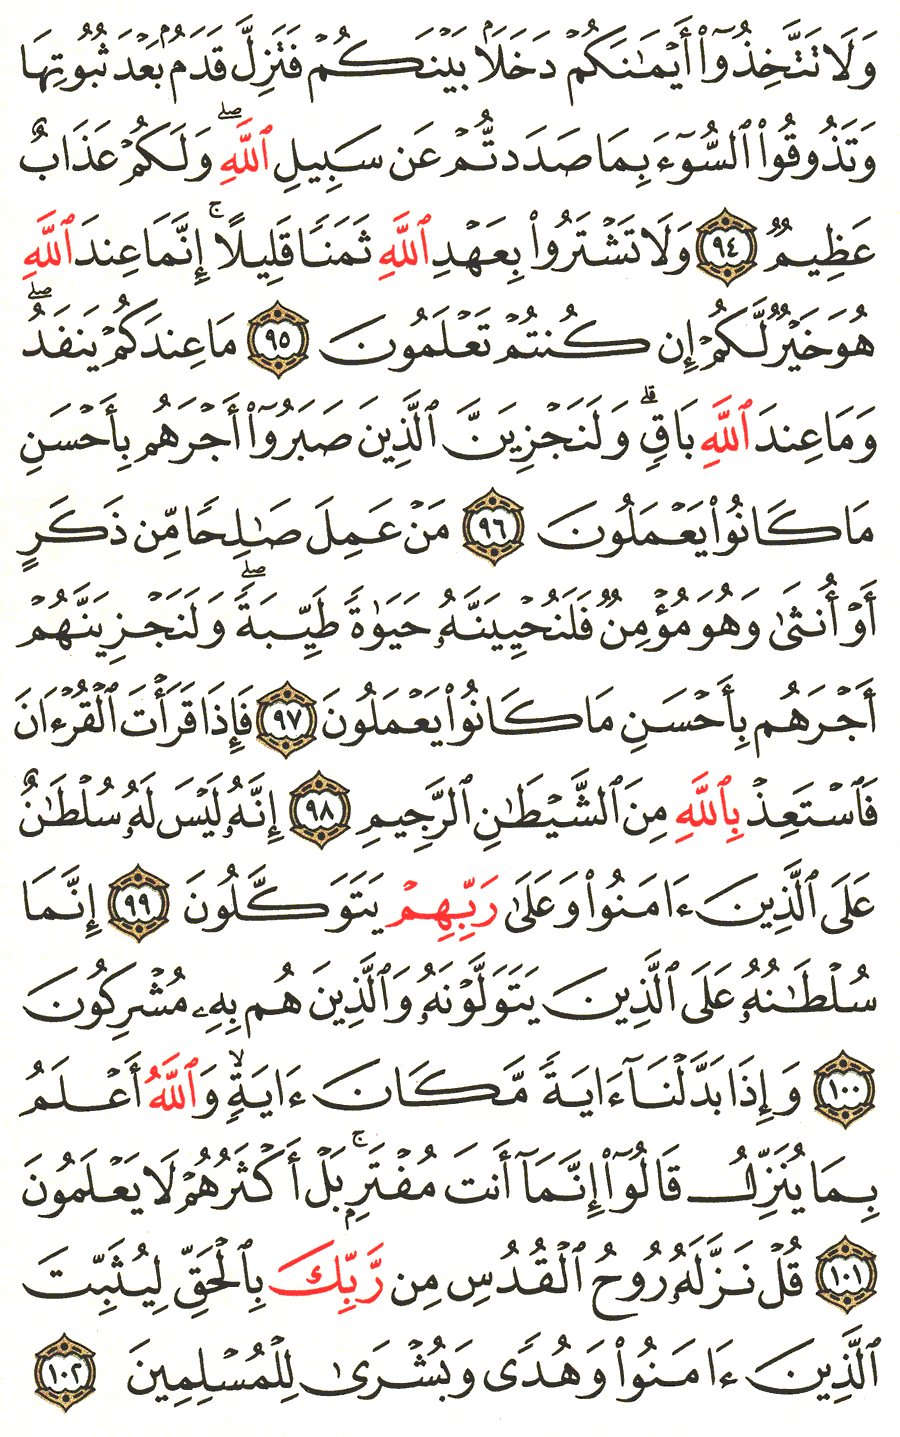 الصفحة رقم 278  من القرآن الكريم مكتوبة من المصحف